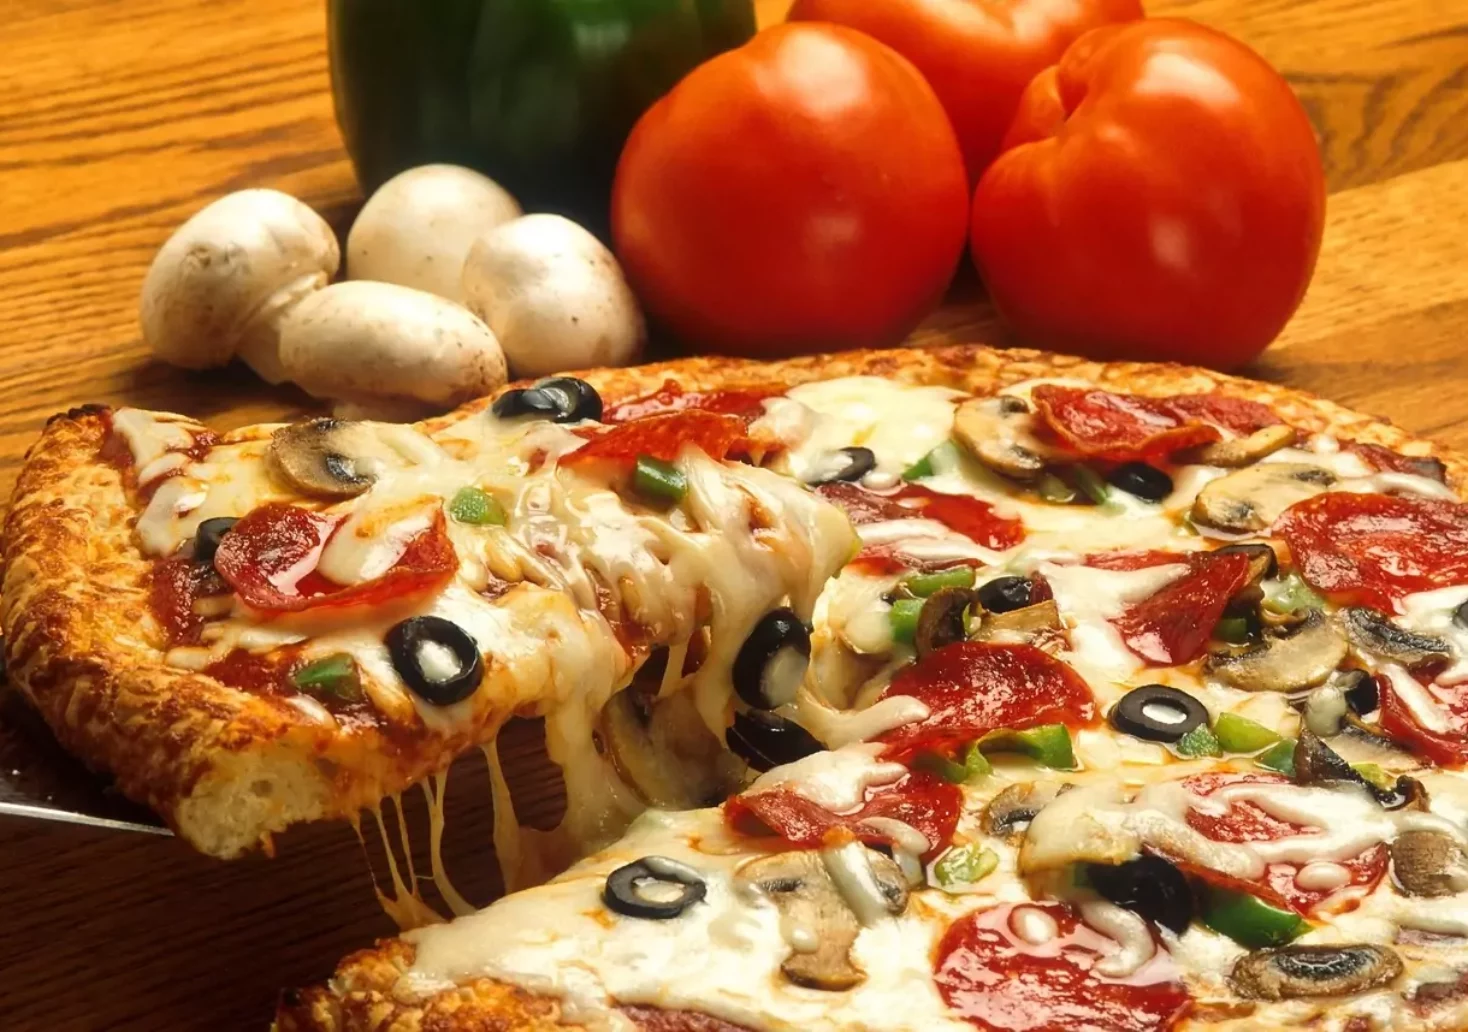 Ein Bild auf 5mib.at zeigt eine Pizza. Dahinter liegen Champignons und Tomaten. Ein Stück der Pizza wird gerade angehoben.